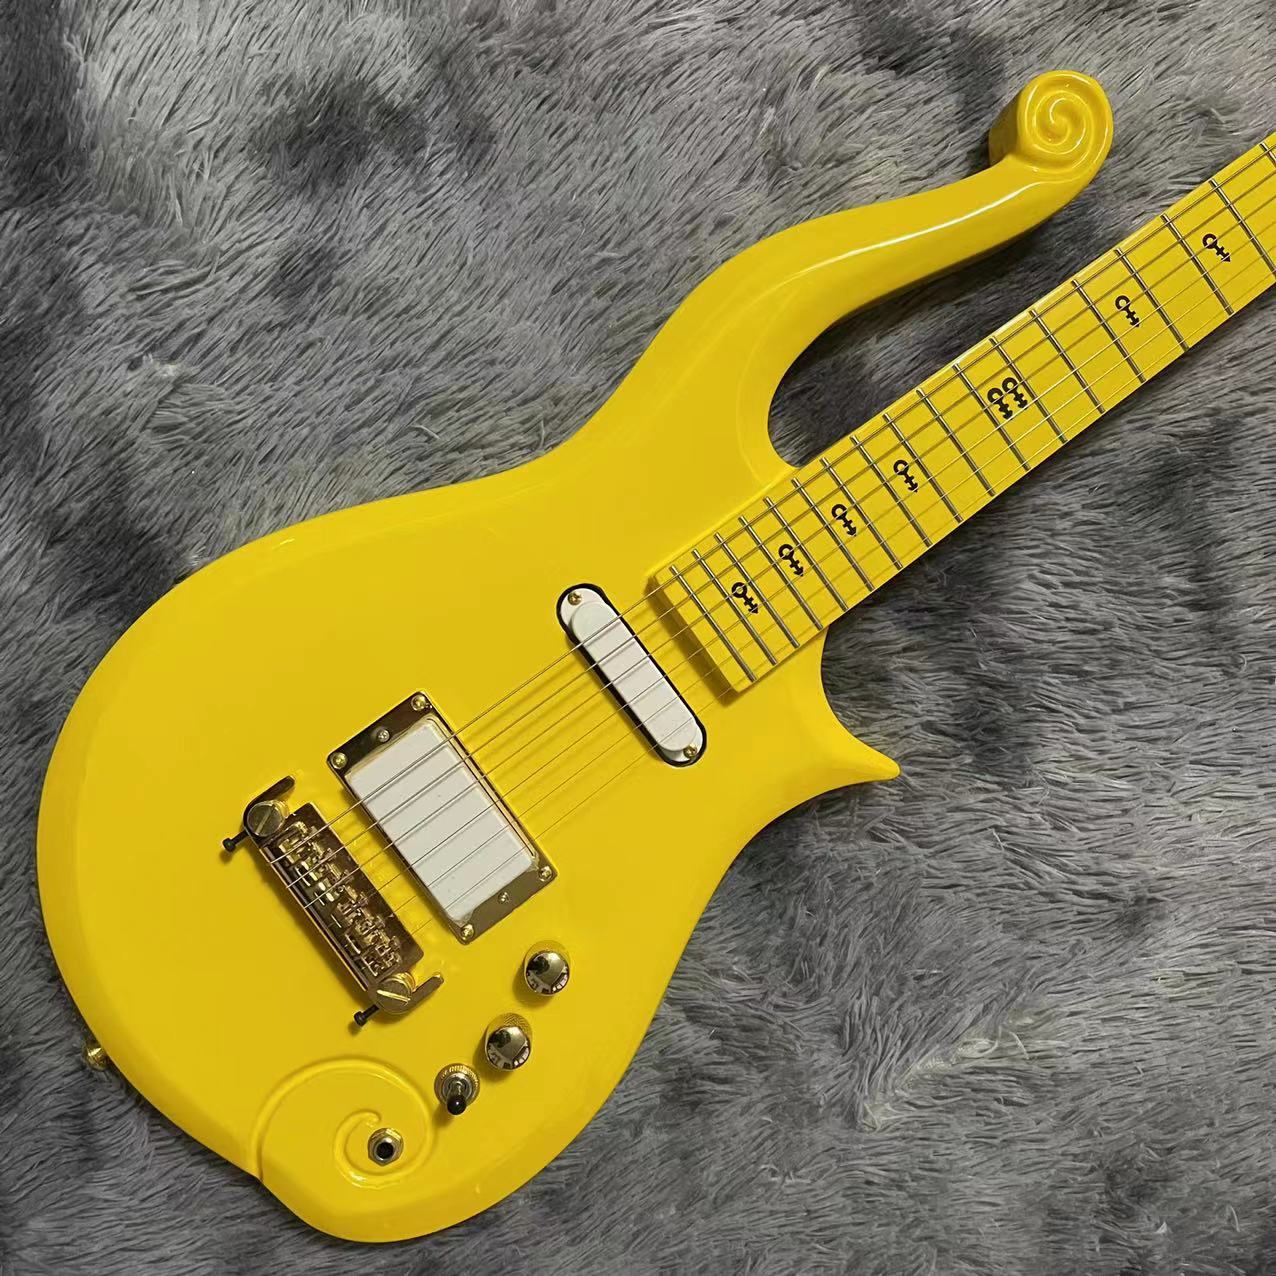 Maple Personnalisé Touche Touche Col MAAHOGANY CORPS Guitare électrique Cloud avec couleur jaune